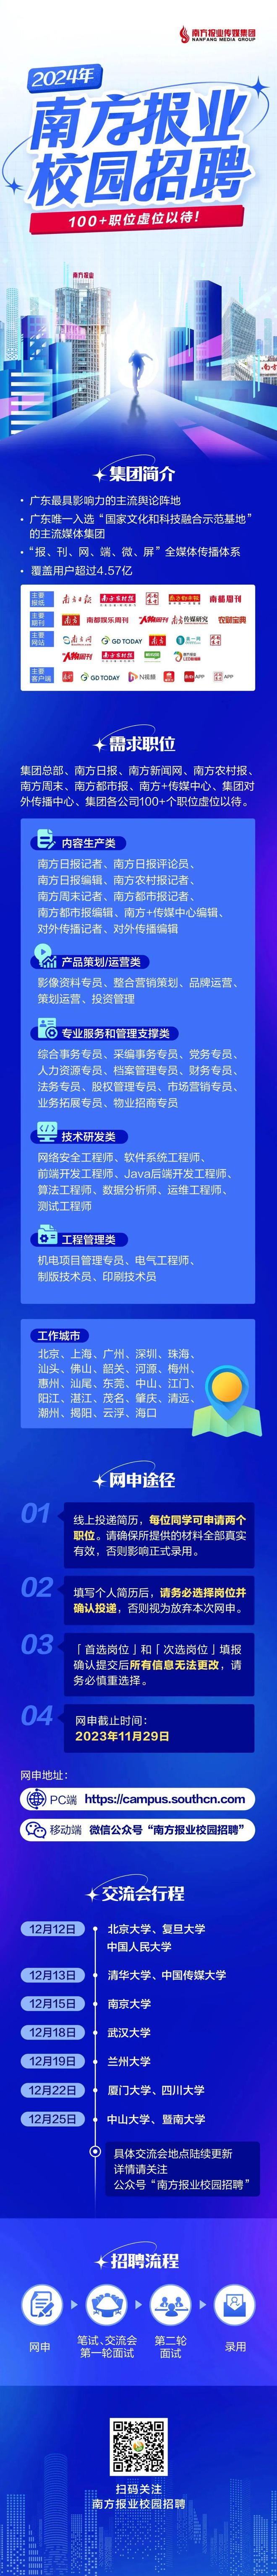 招聘快讯字kaiyun官方网站下载节跳动腾讯互娱小红书爱奇艺等招聘(图2)